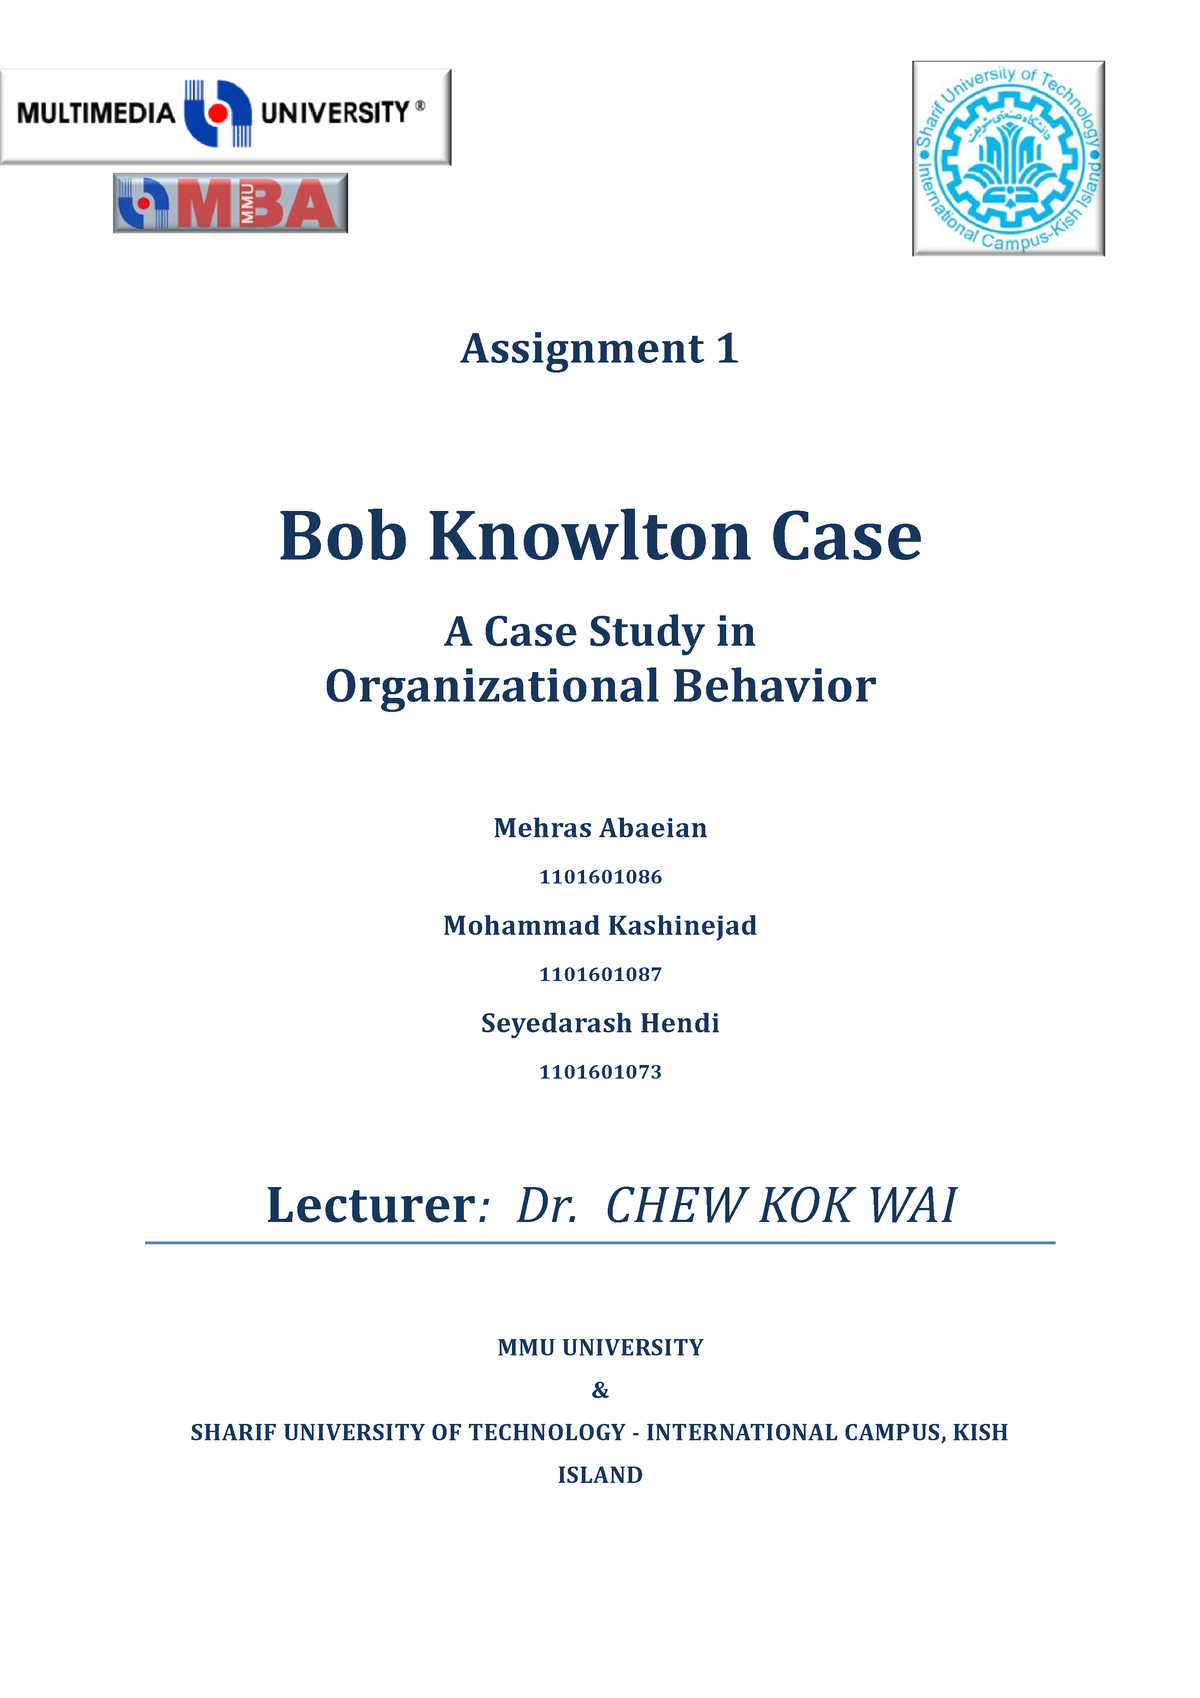 bob knowlton case analysis